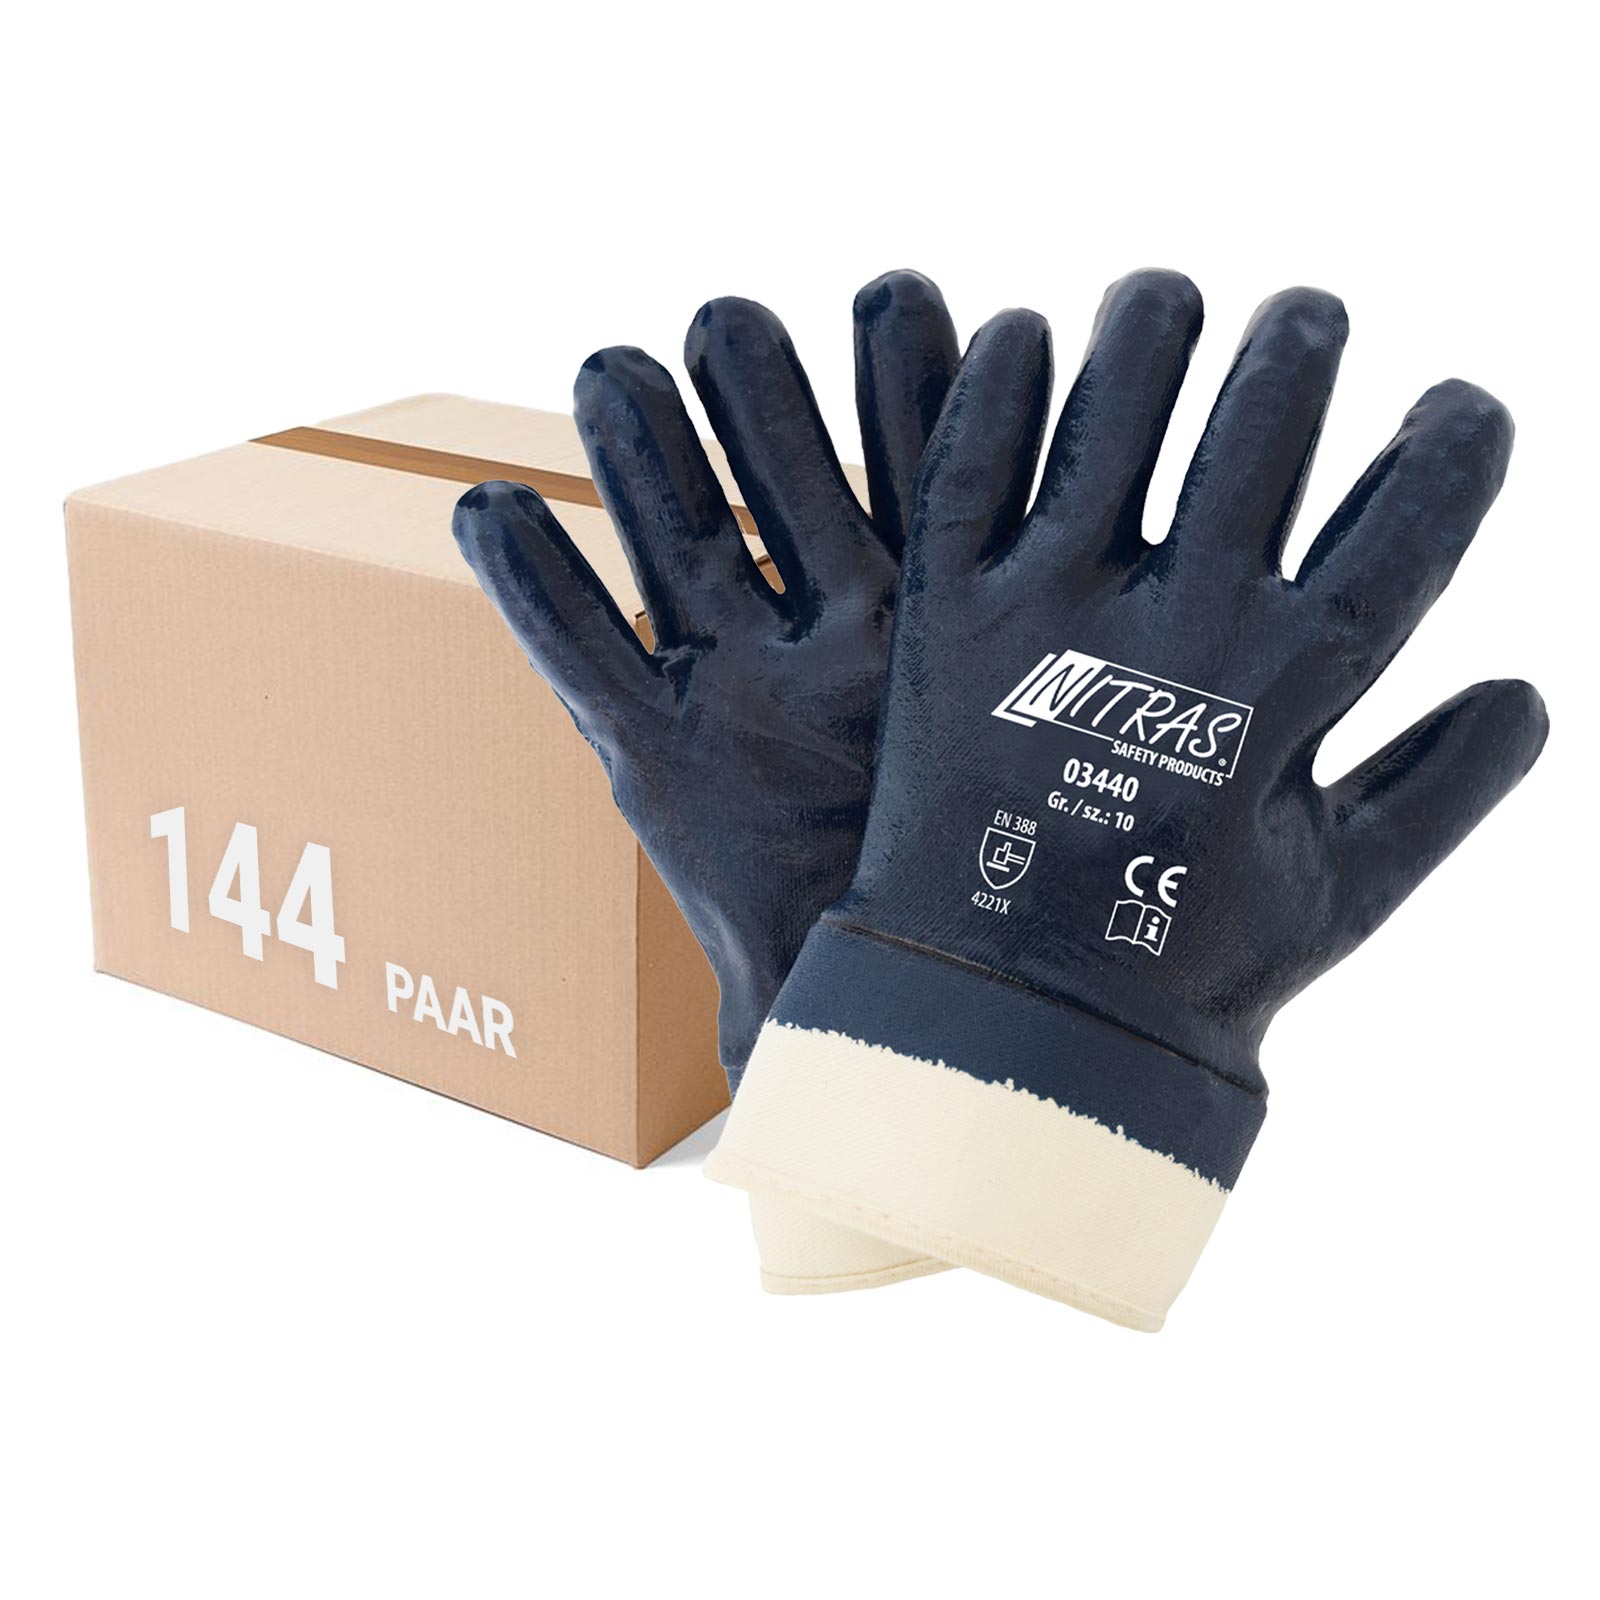 NITRAS 03440 Nitrilhandschuhe Arbeitshandschuhe Handschuhe mit Stulpe - 144 Paar Größe:11 von NITRAS